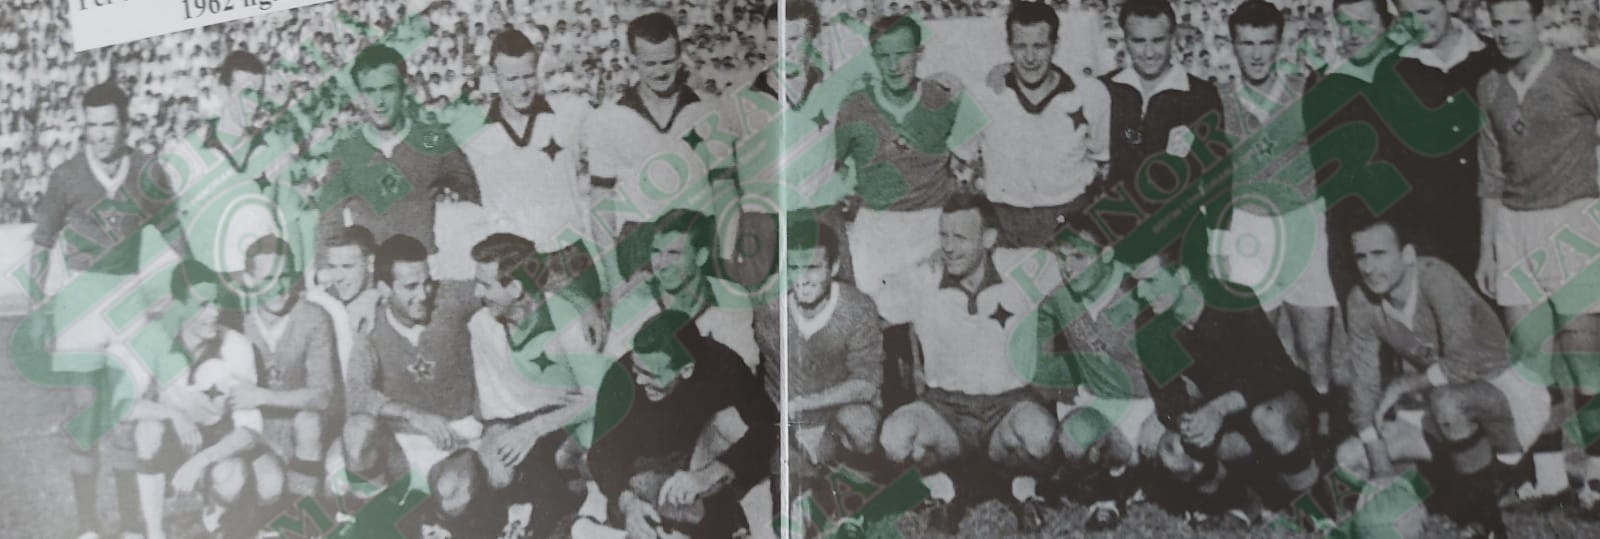 1962. PARTIZANI – FK NORRKOPING 1-1. Ndeshja e parë në Shqipëri për Kupën e Kampioneve të Europës. Në foto ajo që sot nuk ngjet më: dy skuadrat së bashku para ndeshjes në një “fair play” më se origjinal. Lojtarët e Partizanit me fanella të errëta (në fakt të kuqe) lart nga e majta: Kraja, Ndini, Resmja, Jashari, M.Papadhopulli. Ulur nga e majta: Gjoka, Frashëri, Deliallisi, P.Pano, M.Janku, Shllaku.